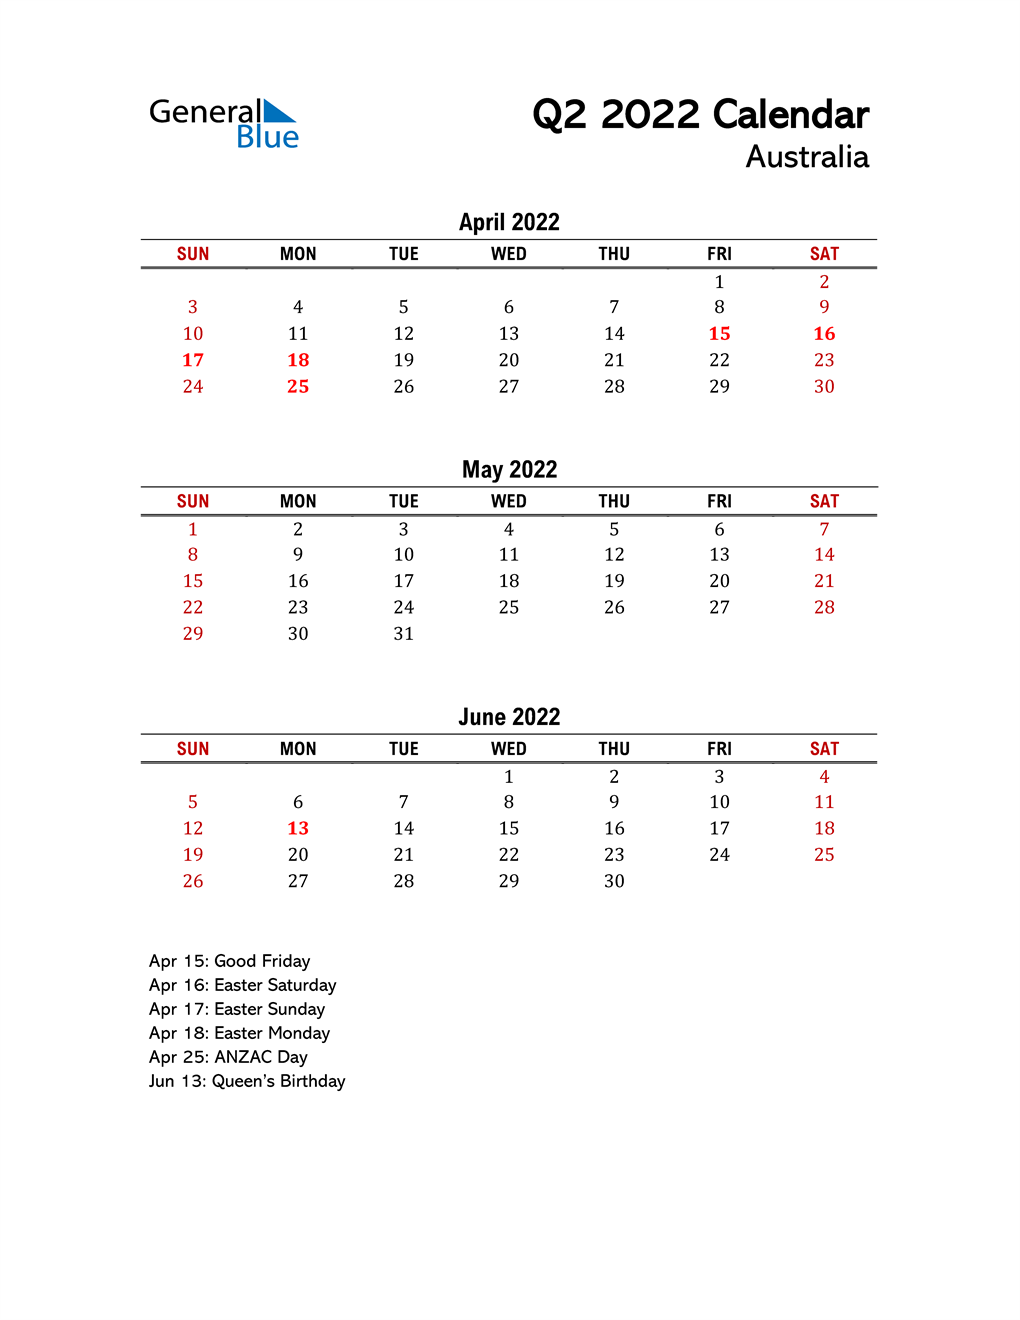 Q2 2022 Quarterly Calendar with Australia Holidays